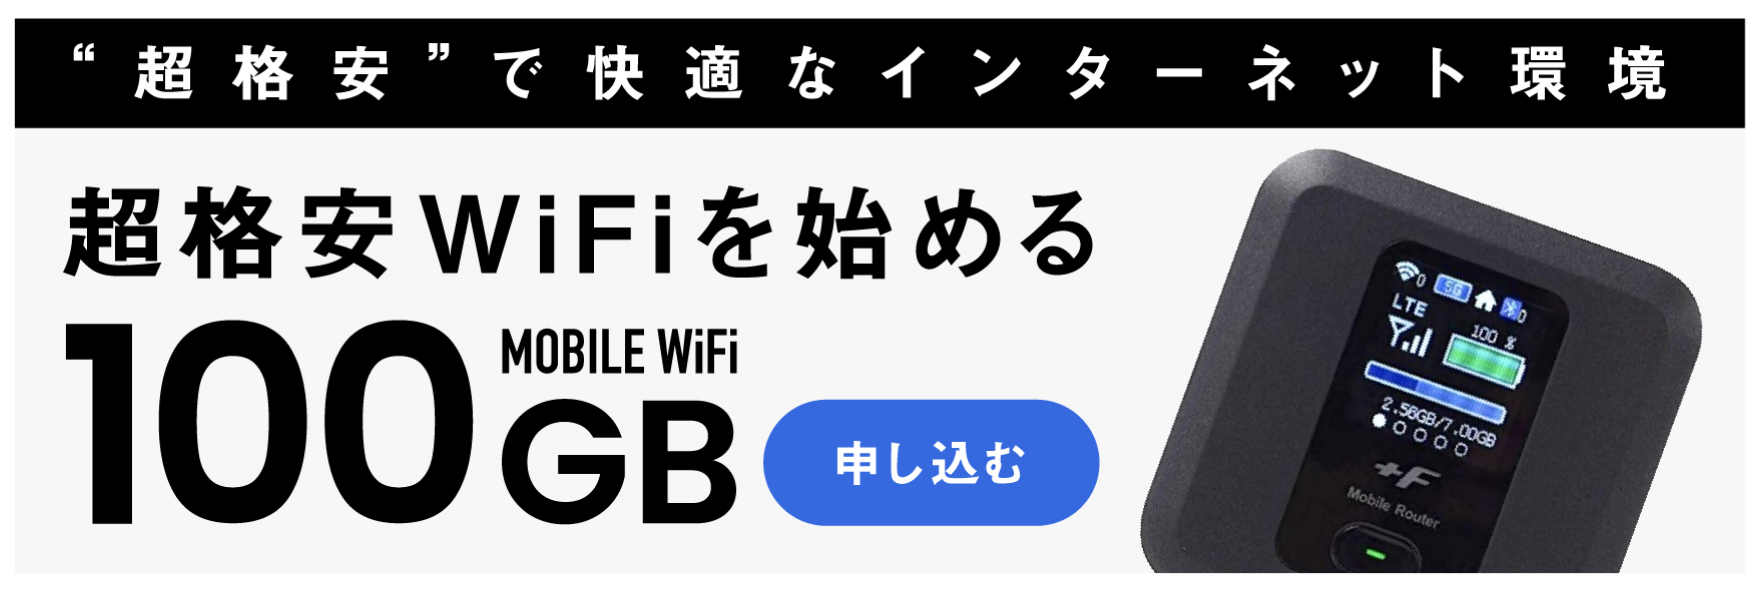 日本のモバイルWiFiは高すぎる!?